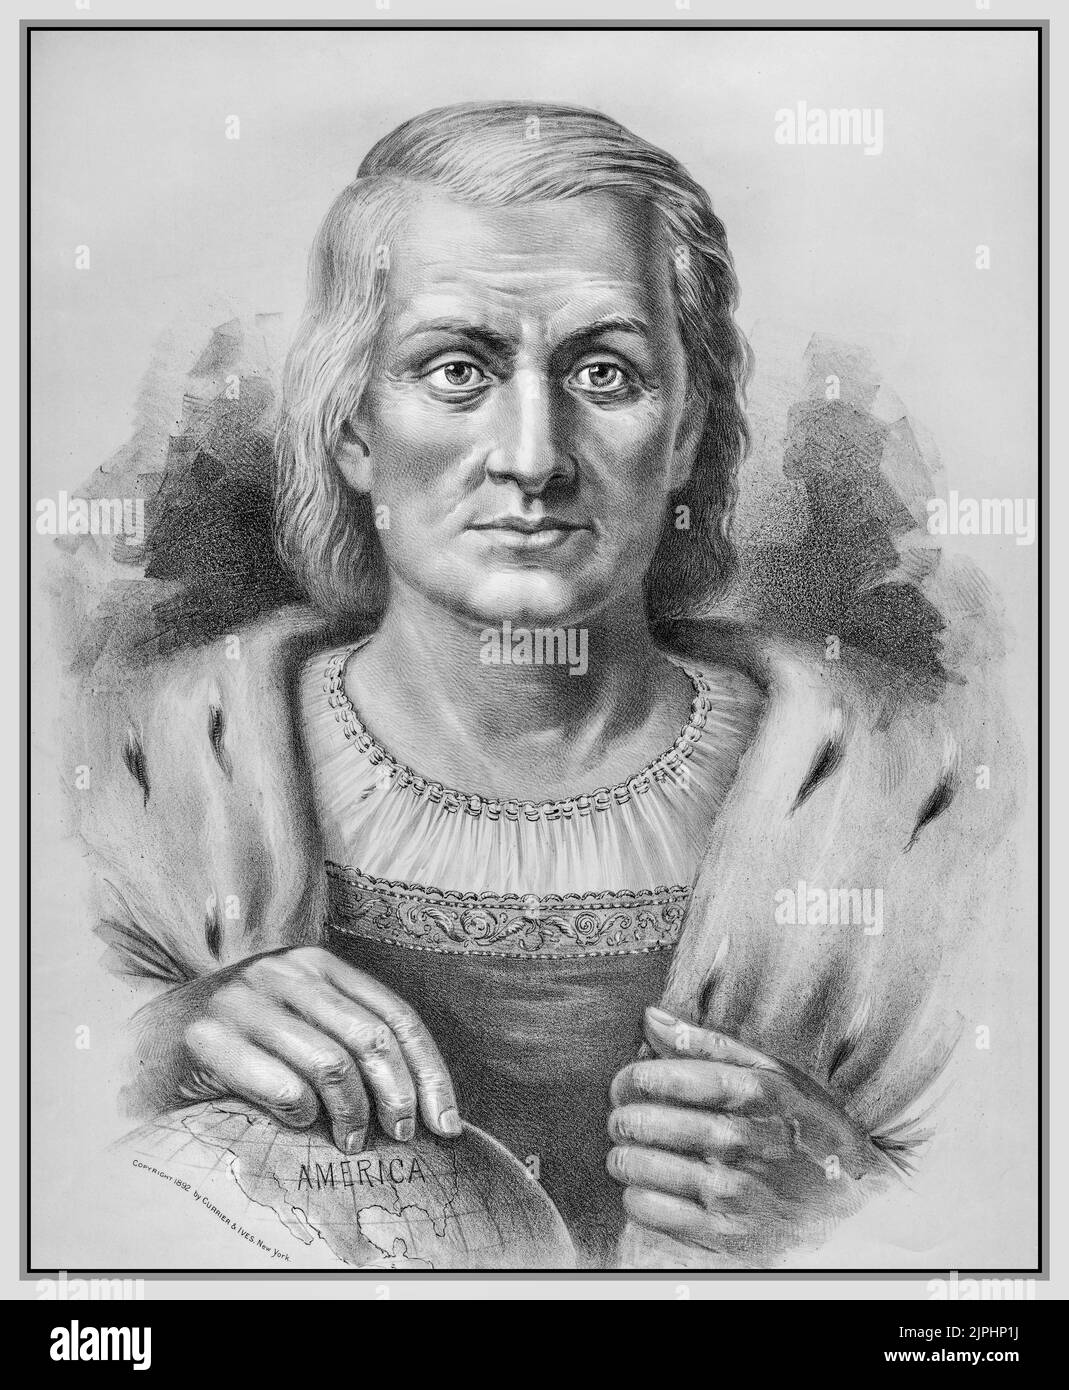 Christopher Columbus Portrait d'époque Discoverer of America 1492. 1890s Lithographie de Currier & Ives, d'une peinture d'Emilie Chaese. Banque D'Images